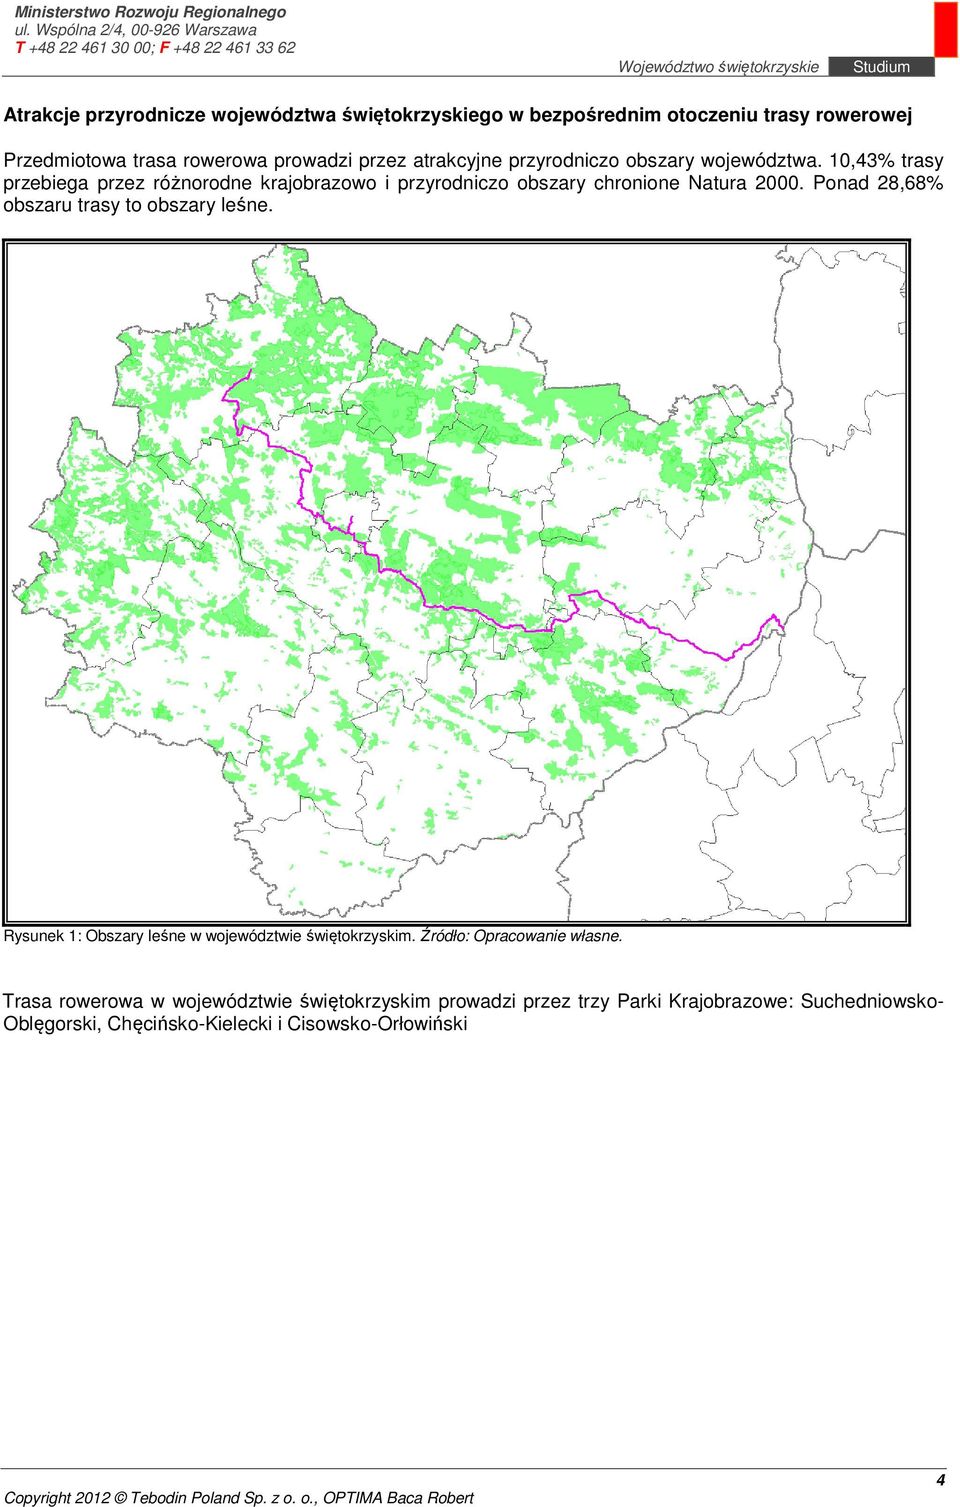 10,43% trasy przebiega przez różnorodne krajobrazowo i przyrodniczo obszary chronione Natura 2000.